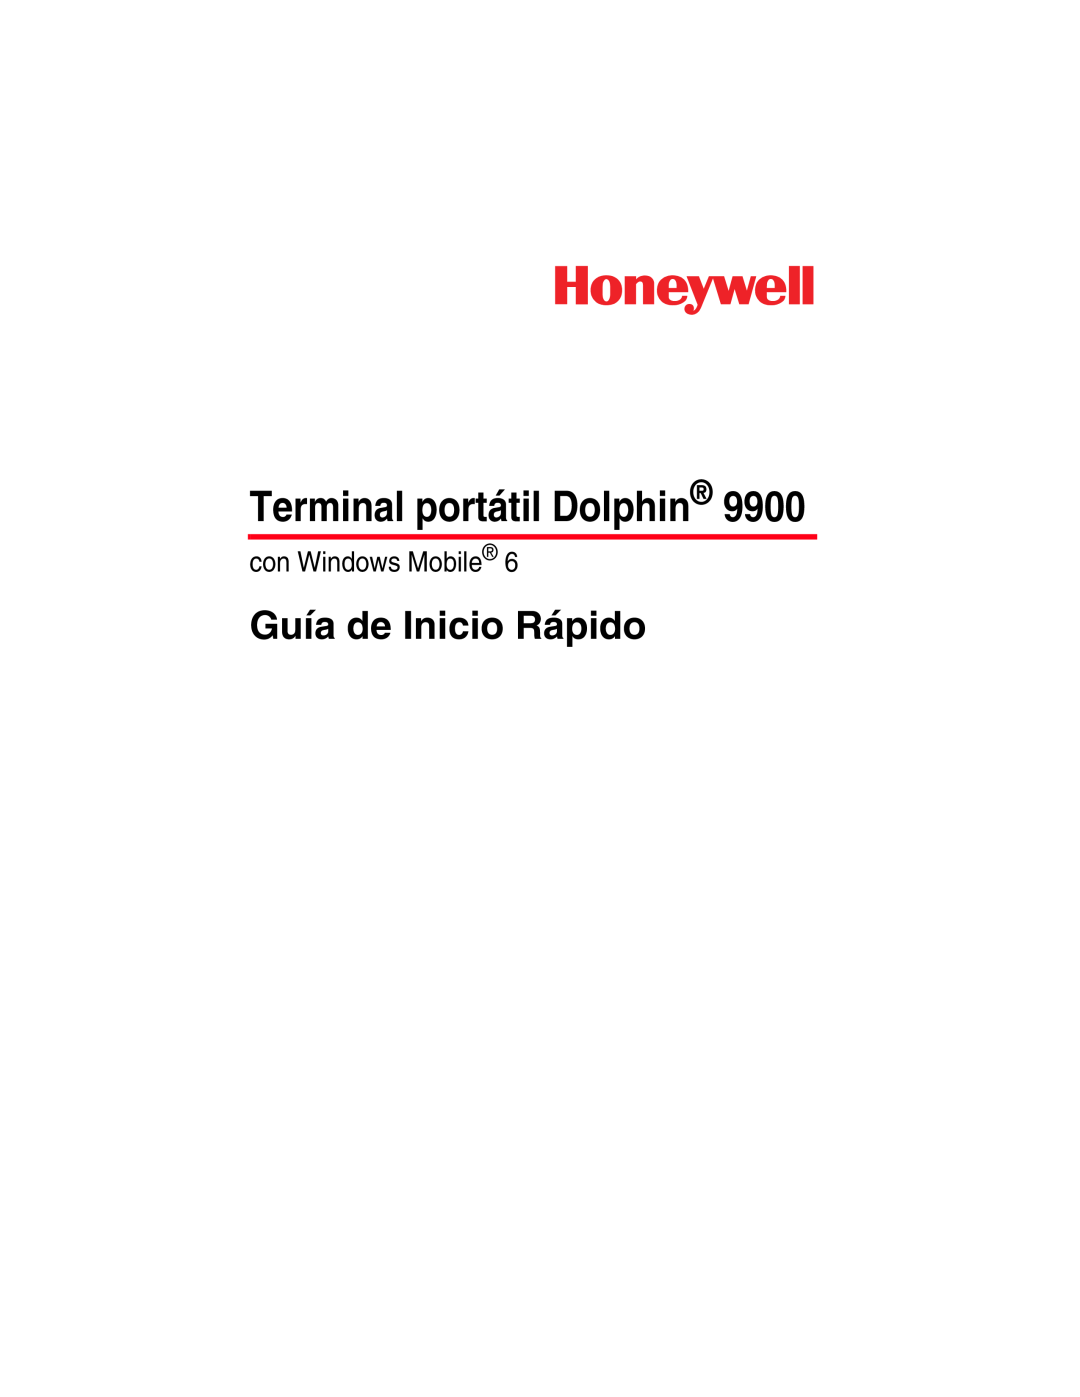 Honeywell 9900 manual Terminal portátil Dolphin, Guía de Inicio Rápido, con Windows Mobile 